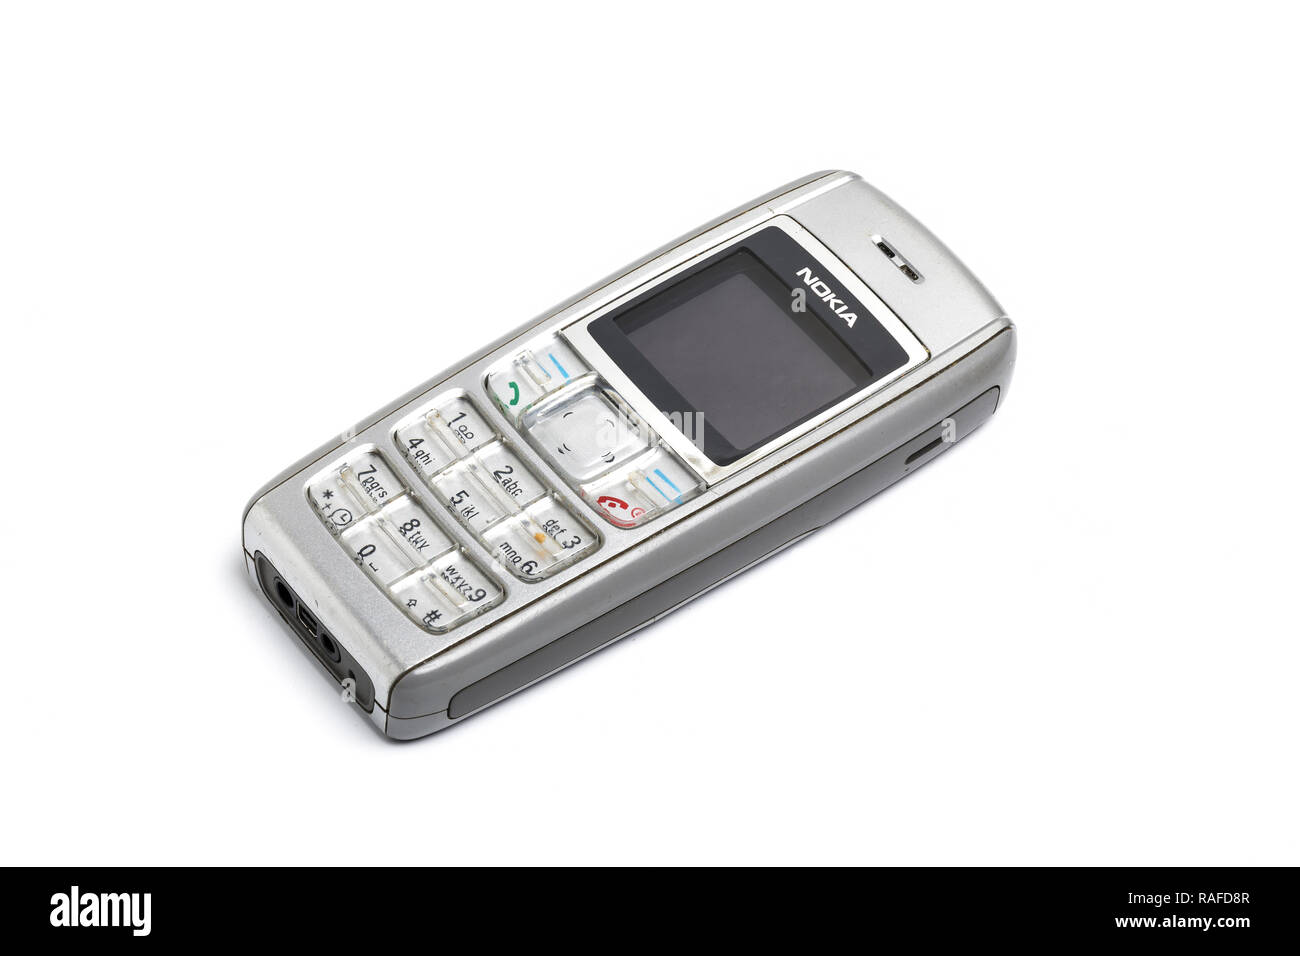 Nokia 1600 Handy oder Mobiltelefon, aus dem Jahr 2006. Gut genutzt. Stockfoto